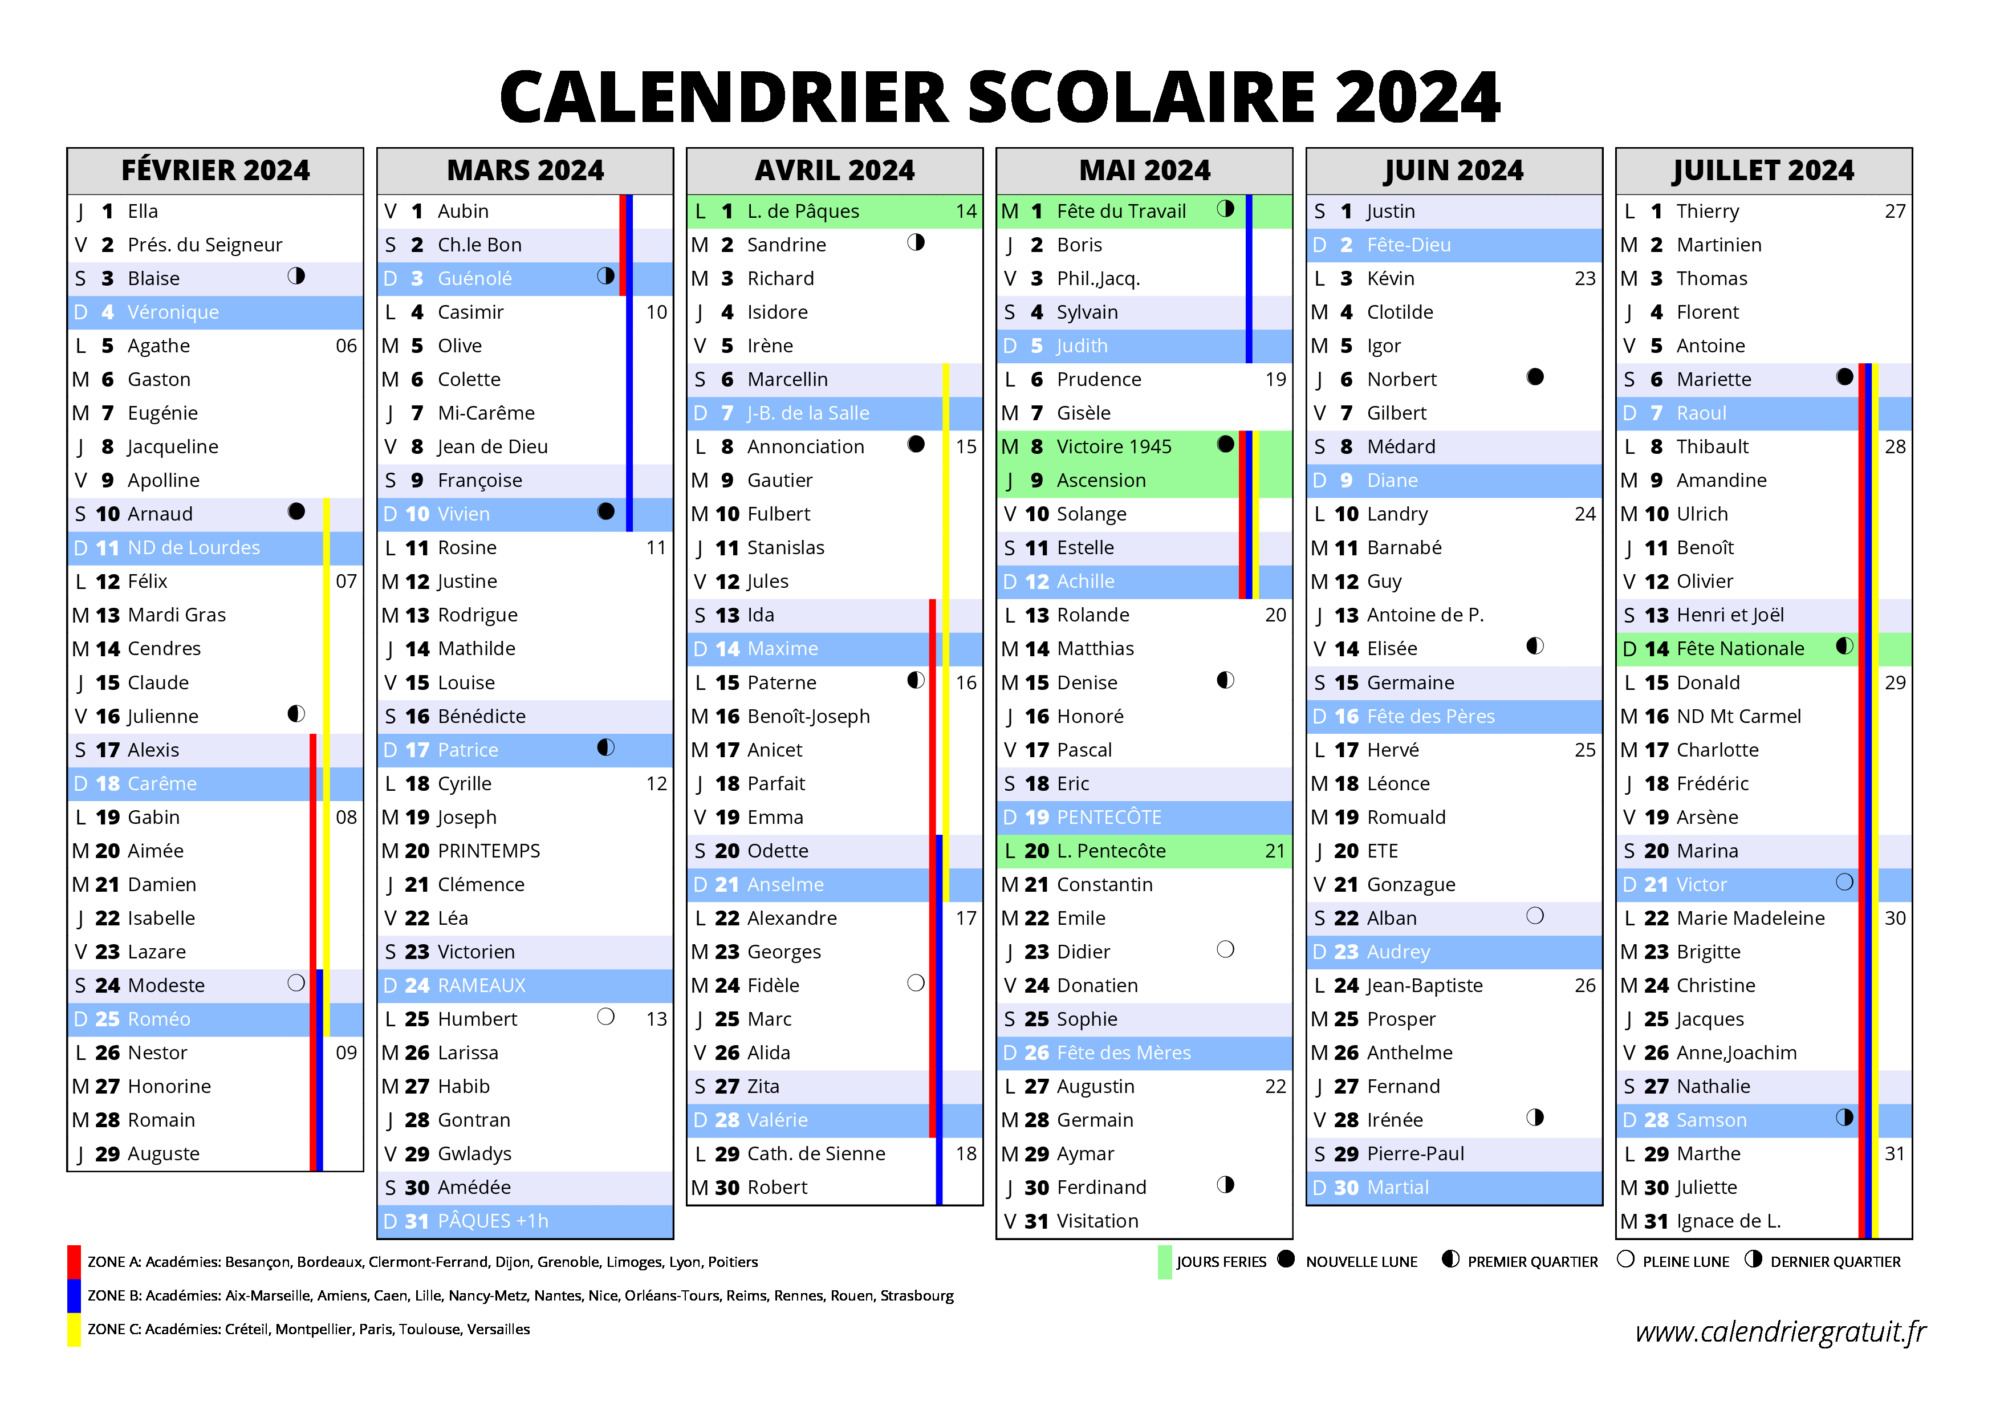 Vacances Scolaires 2023 2024 Dates Et Calendrier Scolaire 2023 2024